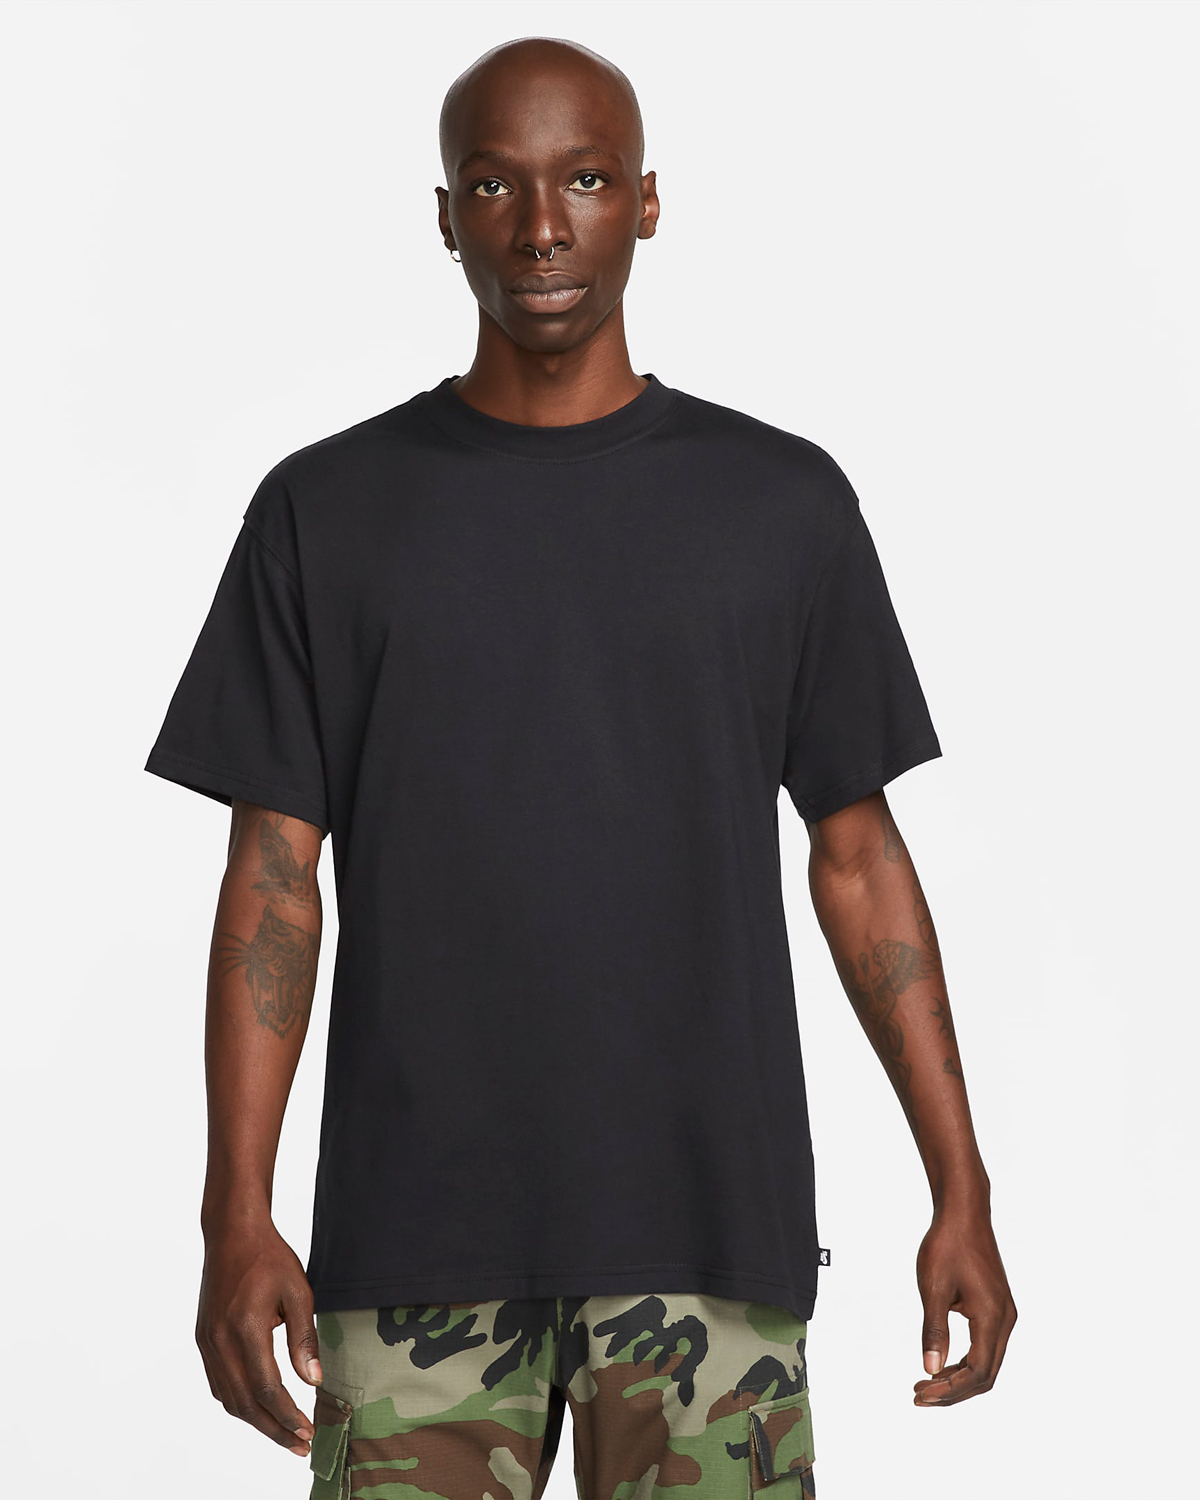 Nike-SB-Skate-T-Shirt-Black-1